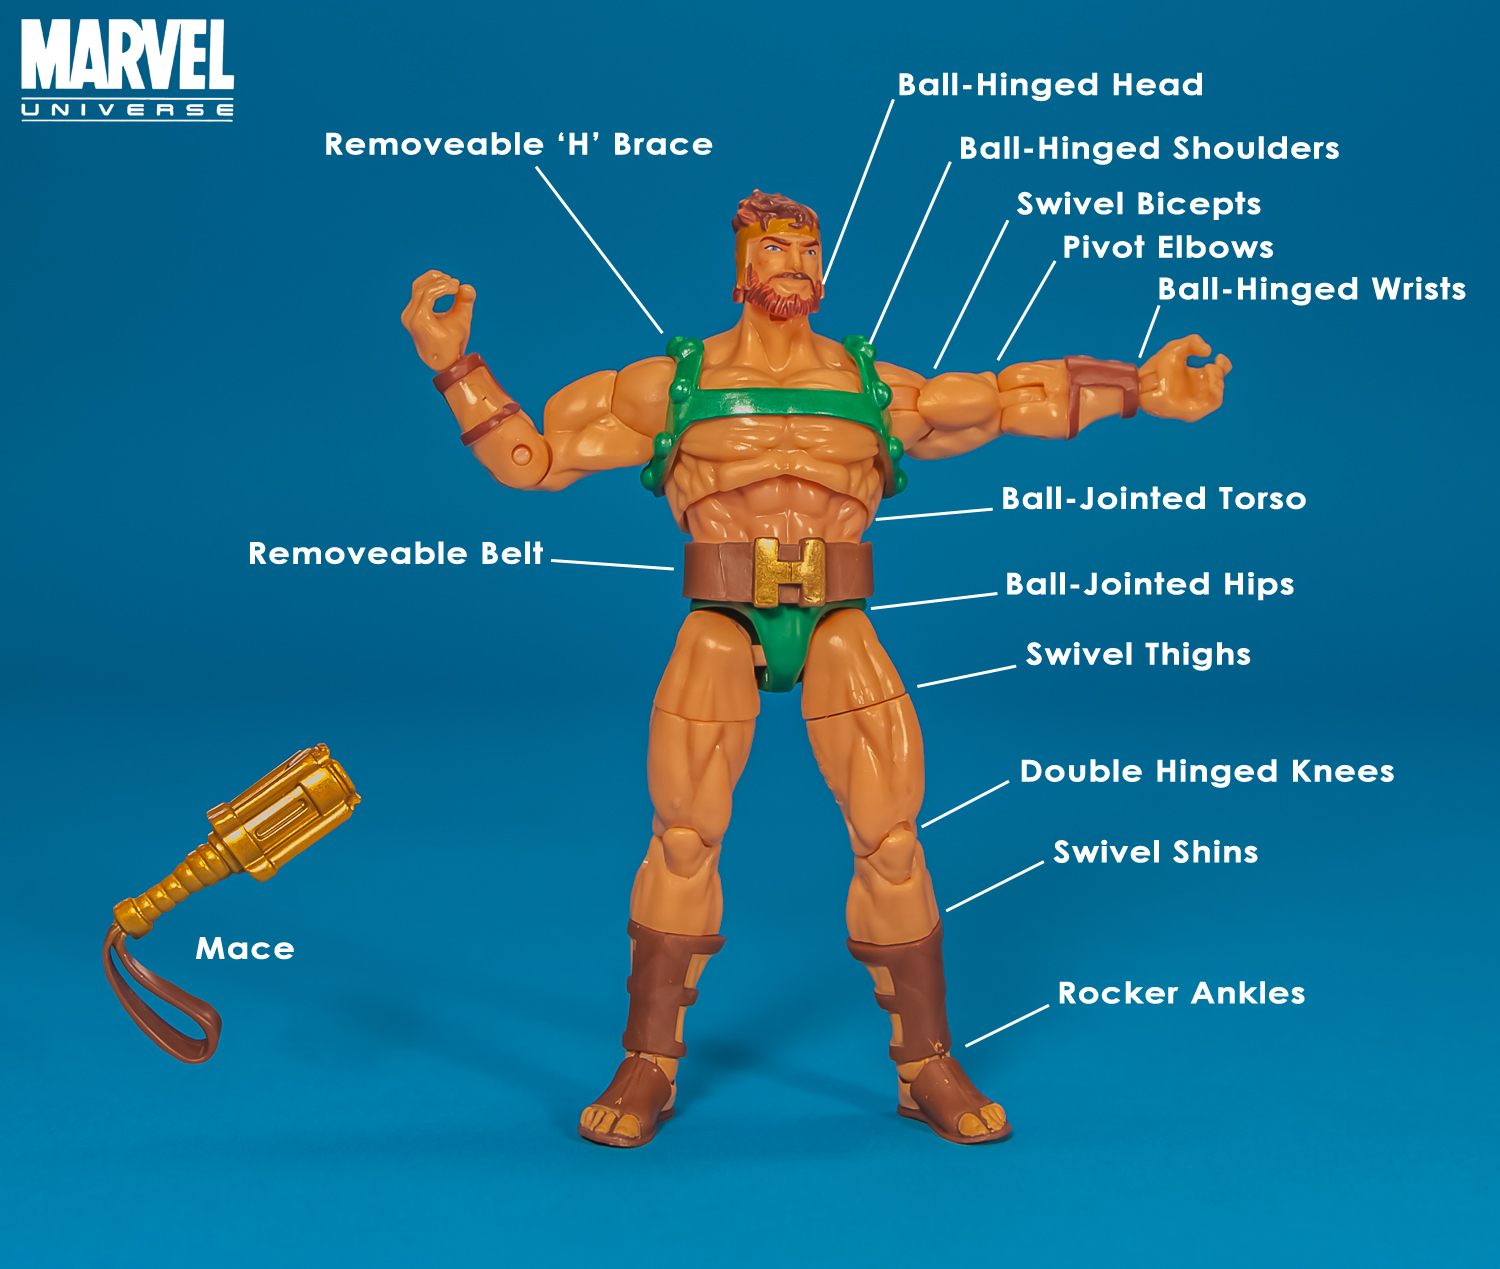 Marvel_Universe_Hercules_Hasbro-014.jpg